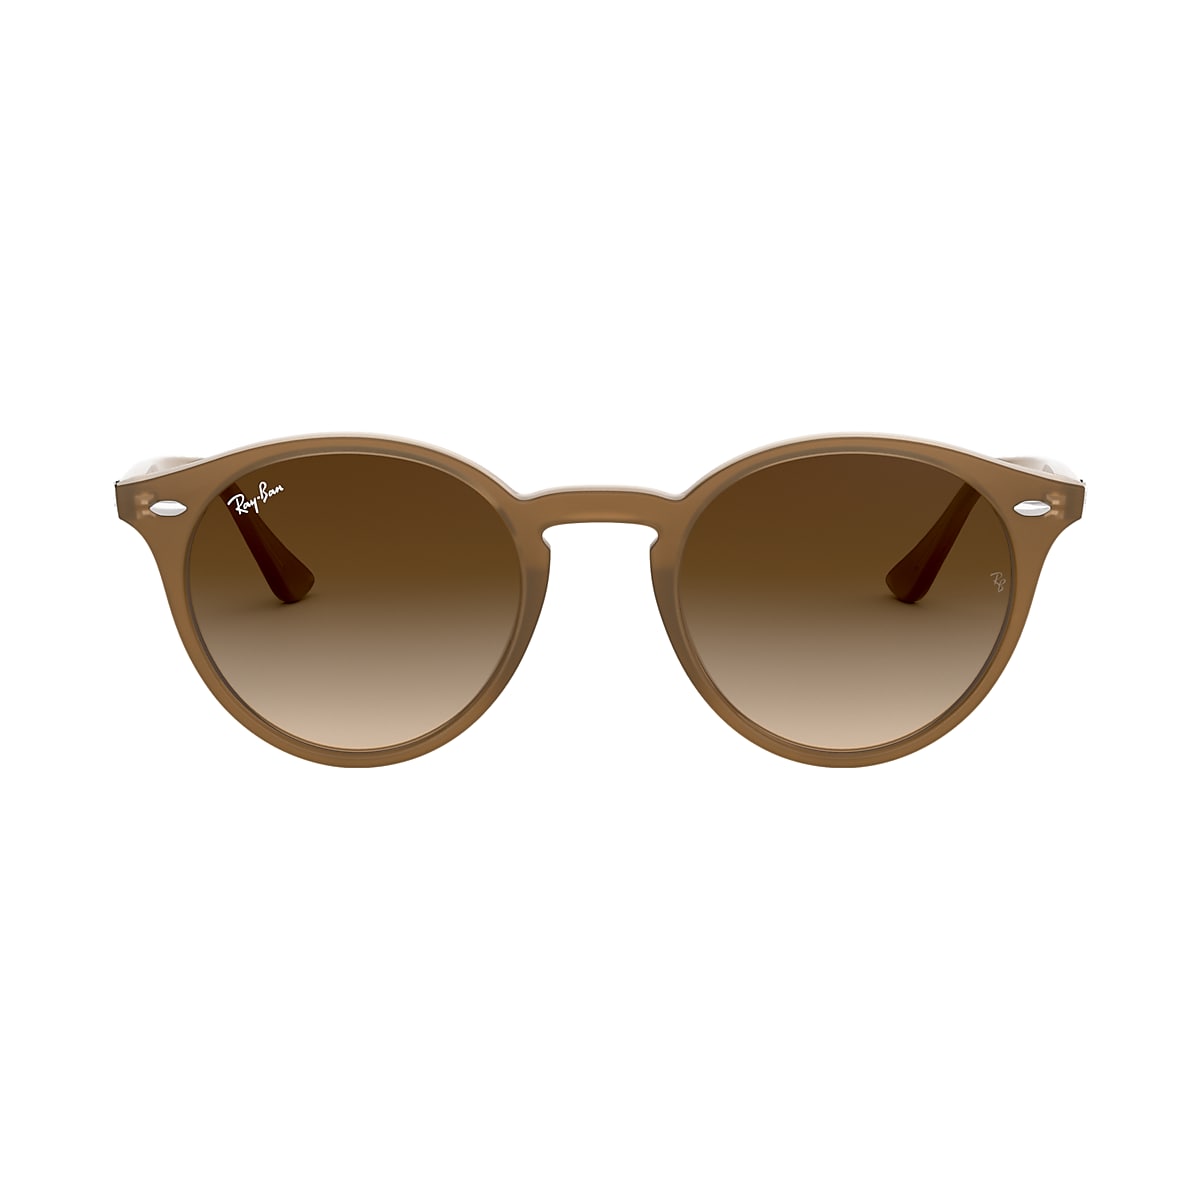 Ray-Ban Light Brown Sunglasses, ®